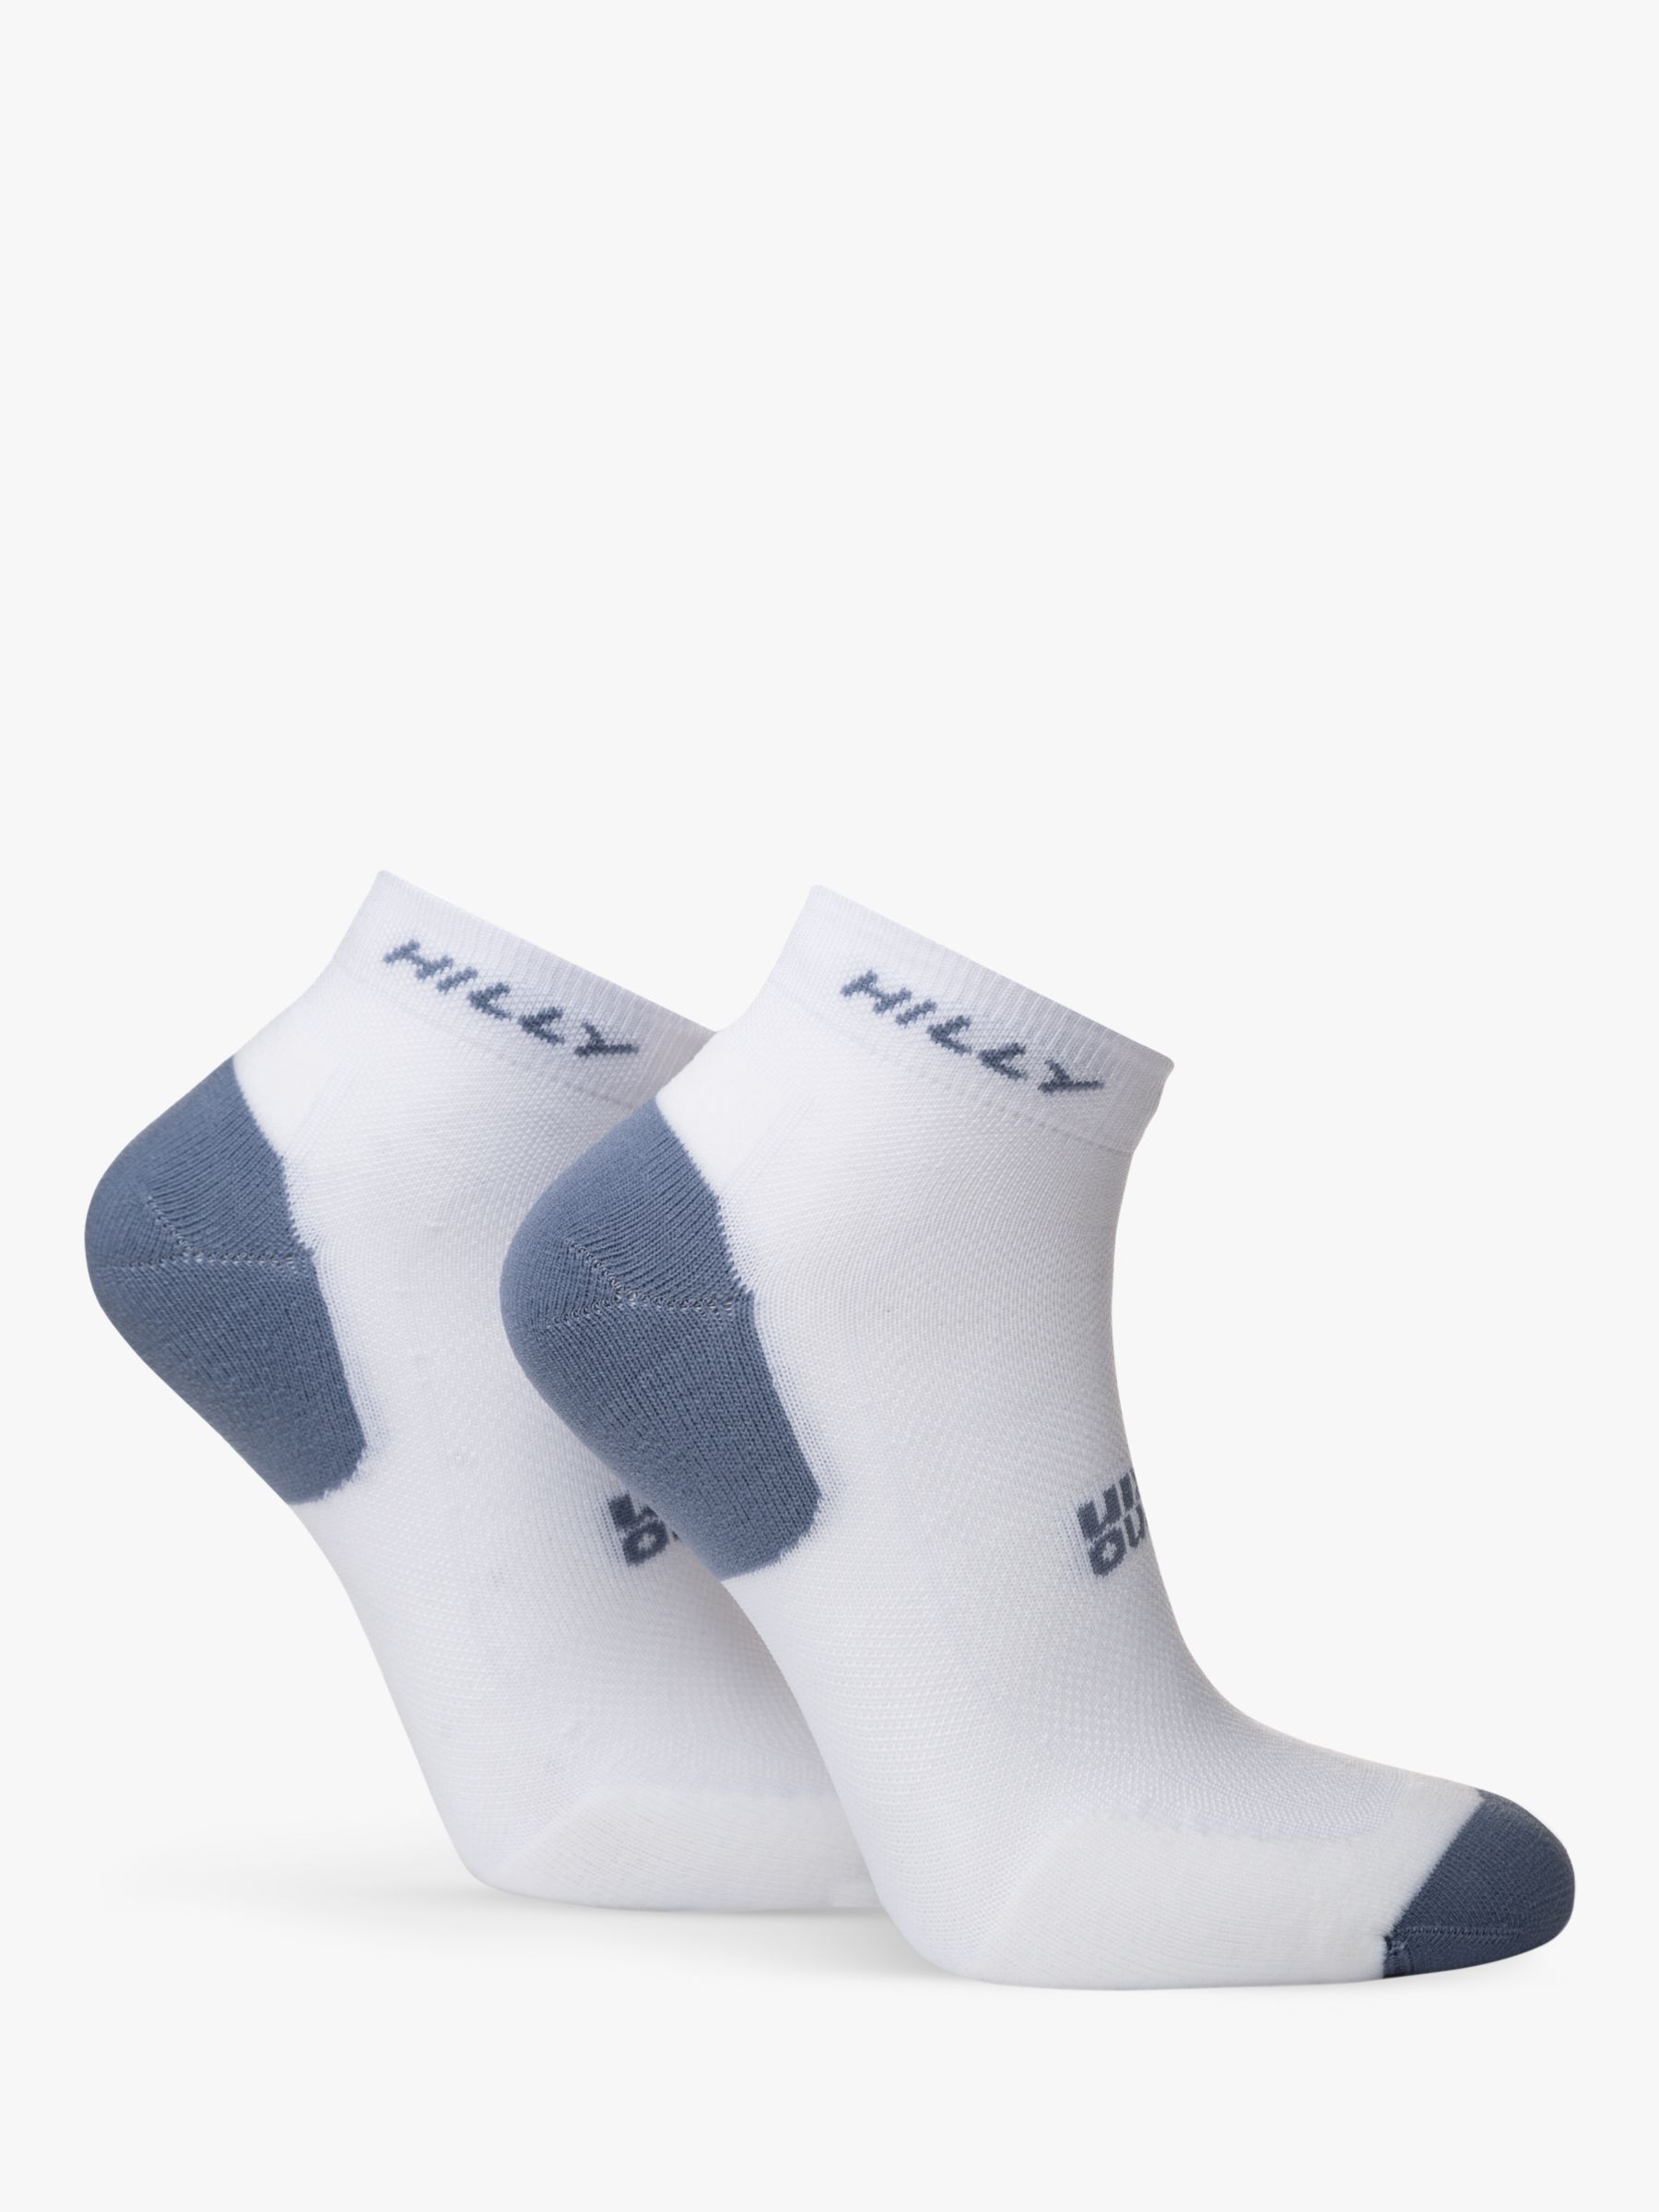 Hilly Active Quarter Length Running Socks, Pack of 2, White/Black/Grey, S